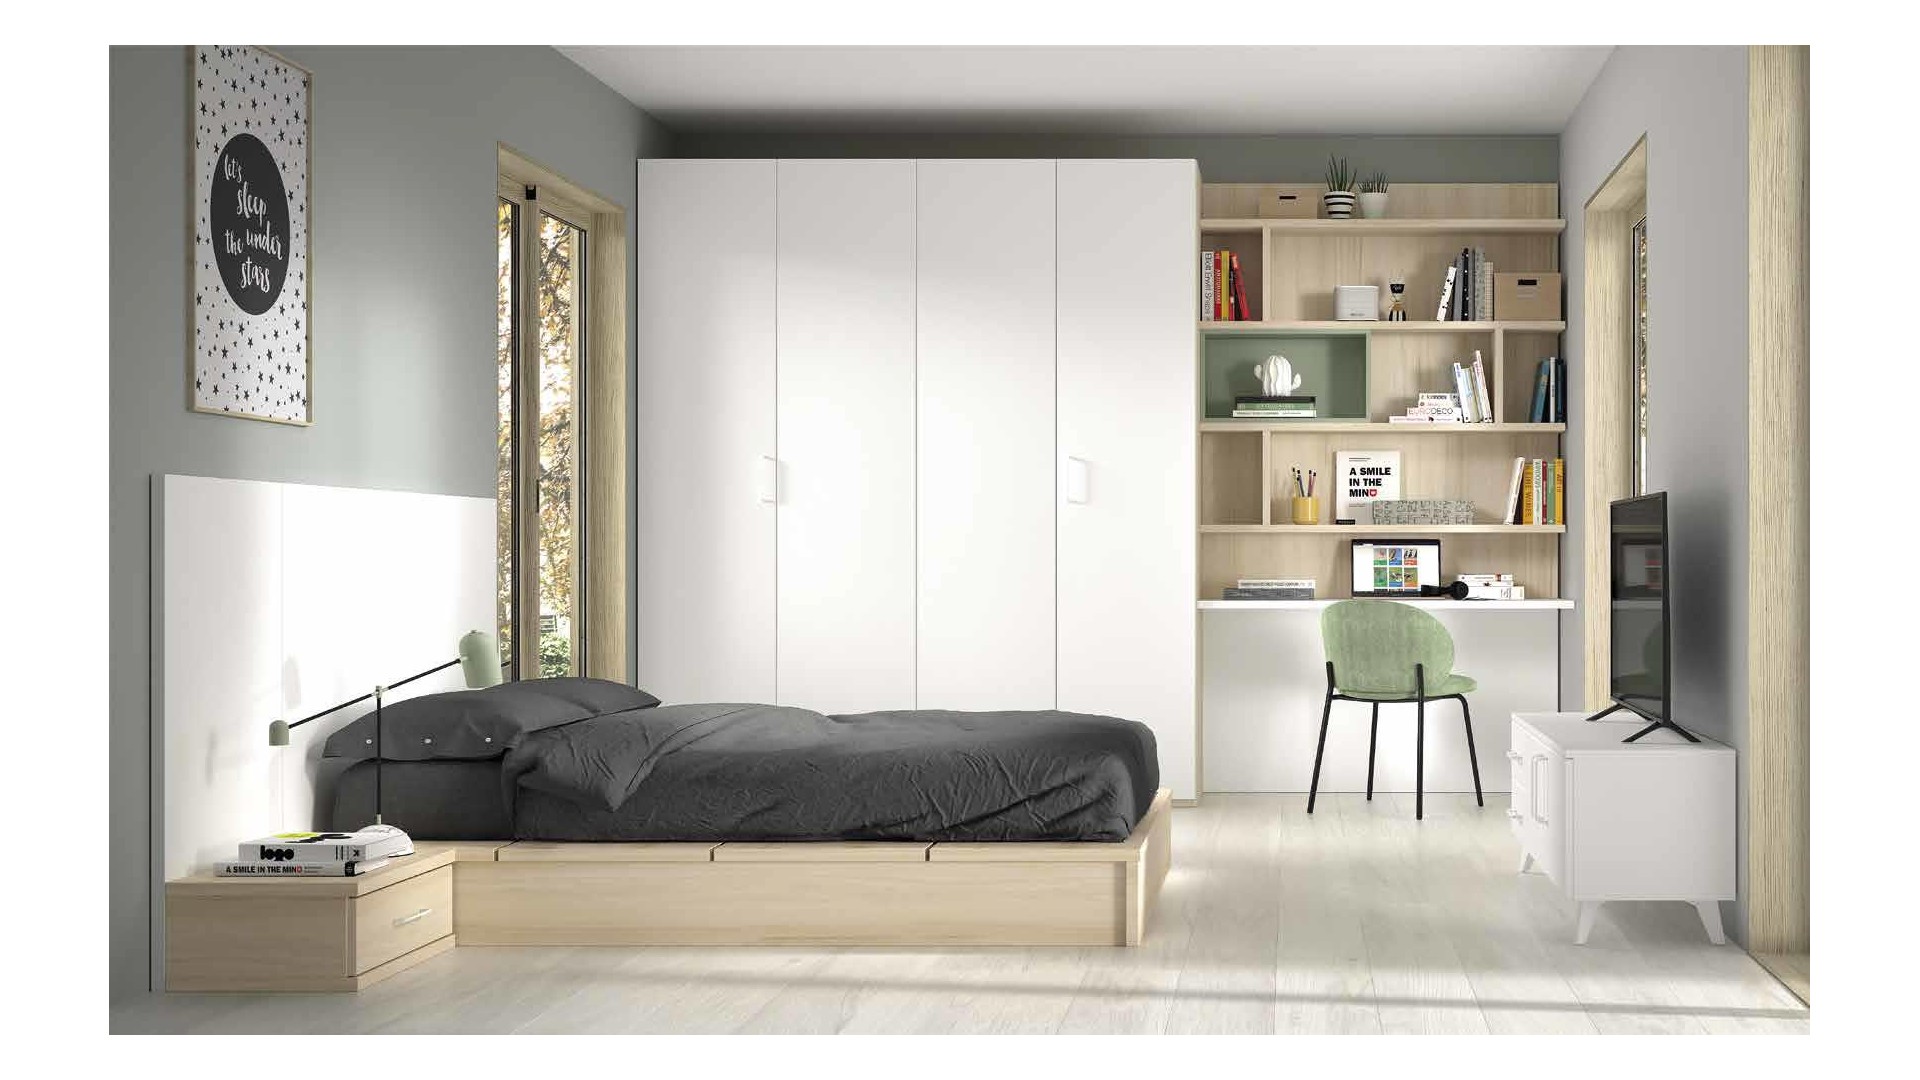 Chambre ado avec lit double futon / tatami F306 - GLICERIO EVOLUTION